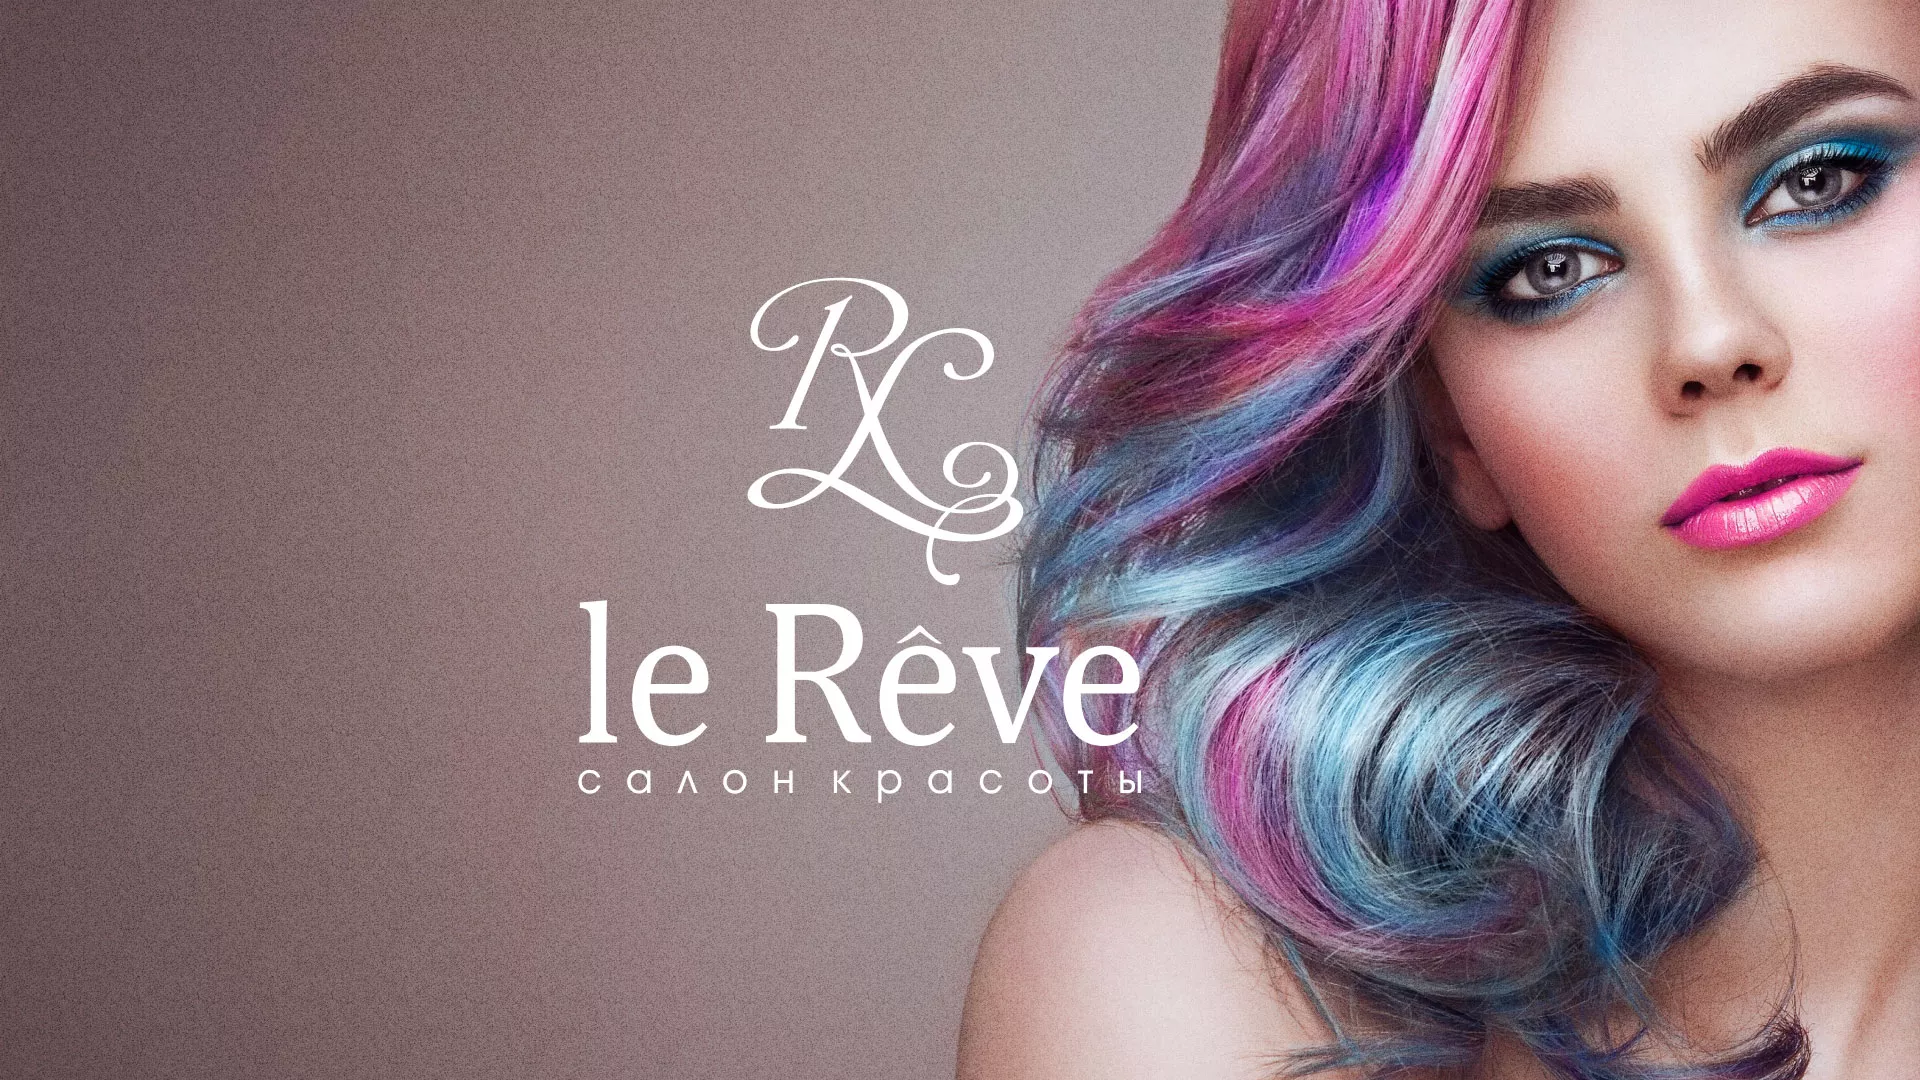 Создание сайта для салона красоты «Le Reve» в Фролово